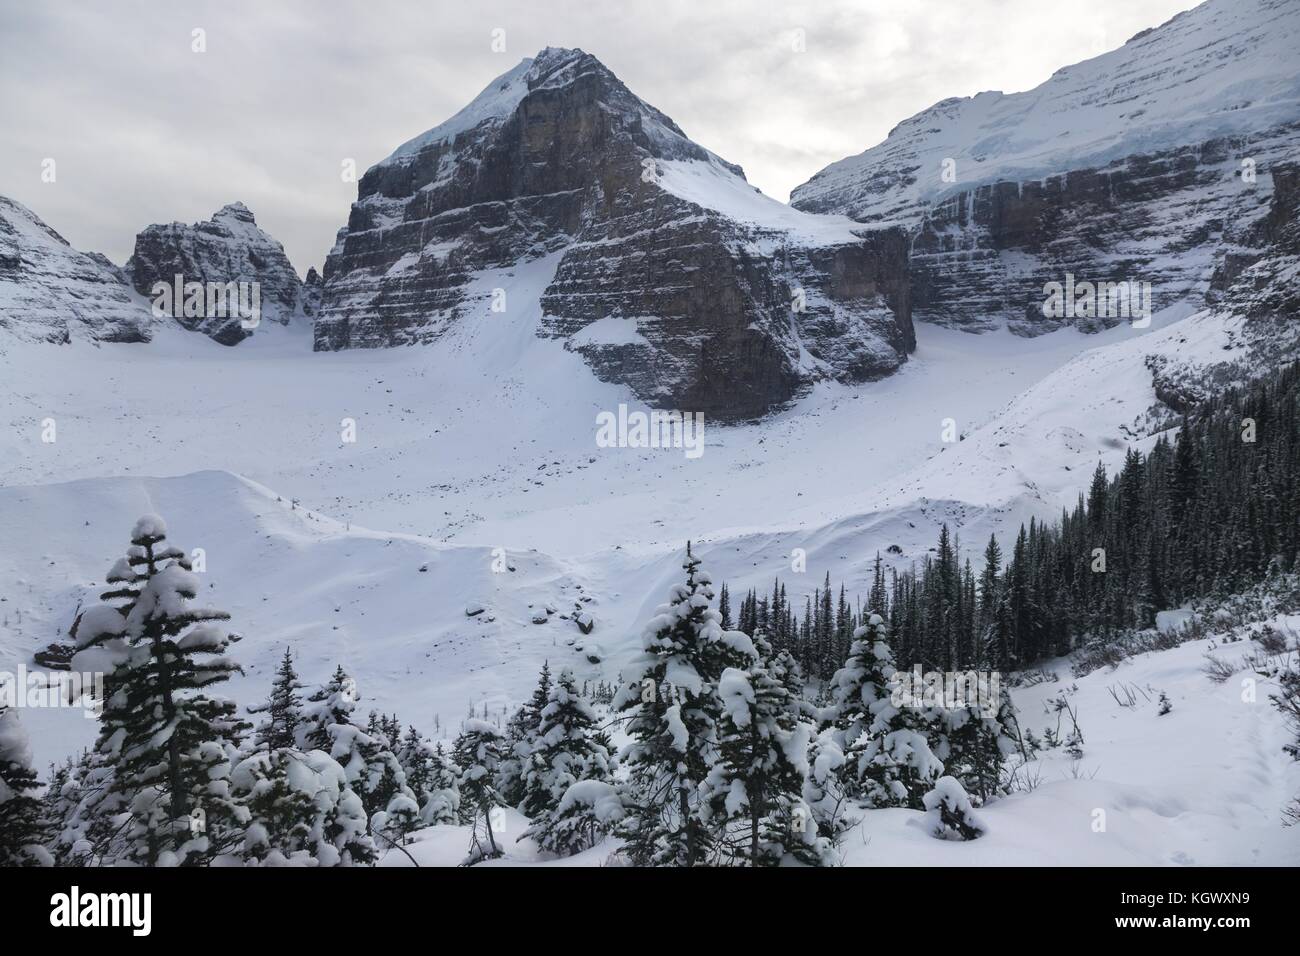 Paysage d'hiver montagnes Rocheuses enneigées Plaine des six glaciers sentier de randonnée sentier des avalanches Lac Louise Parc national Banff Alberta Rocheuses canadiennes Banque D'Images